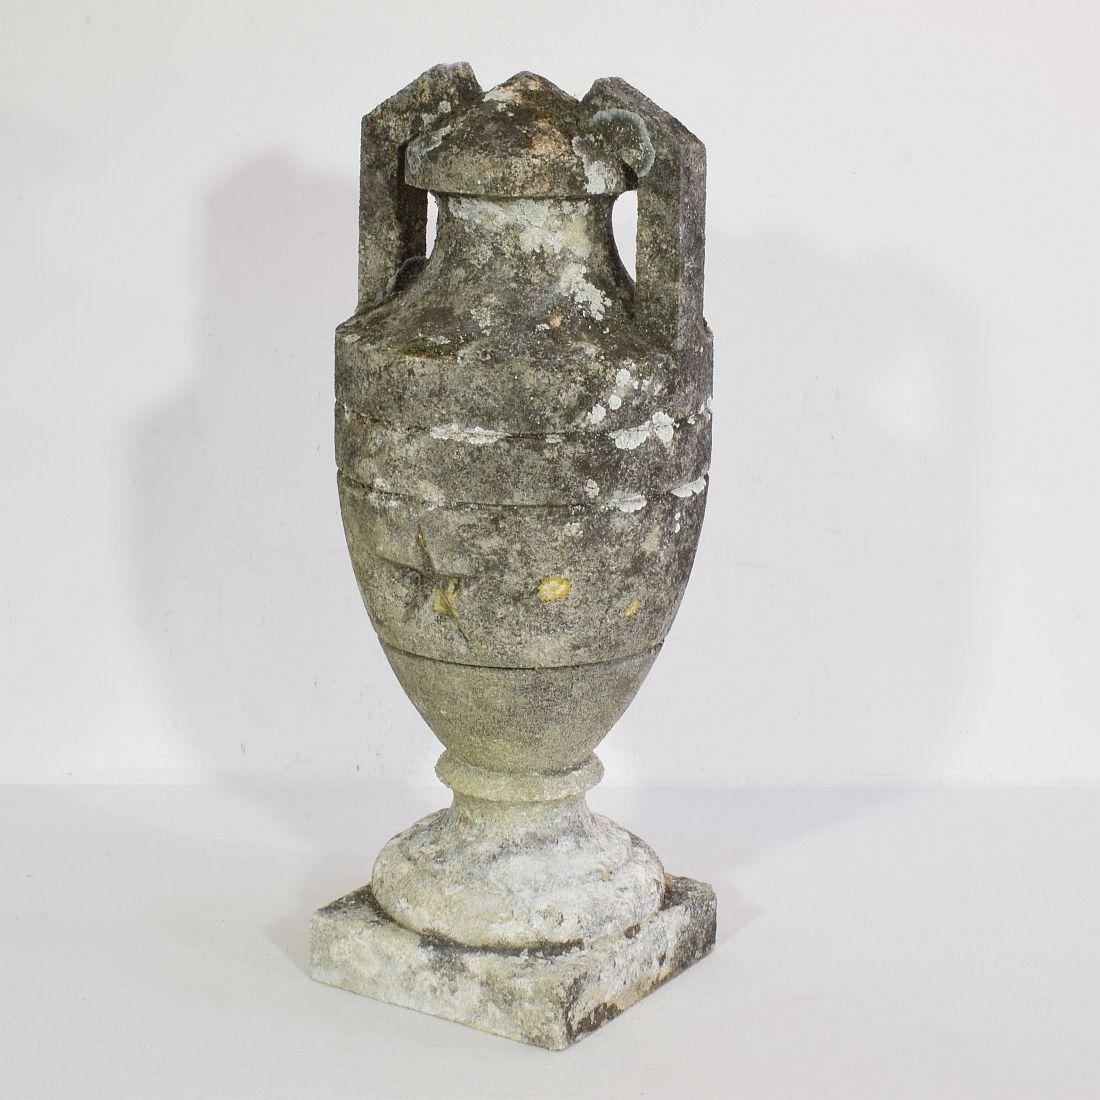 Magnifique vase en pierre sculptée avec une étoile, France, vers 1800-1900.
Réparation vieille et usée.